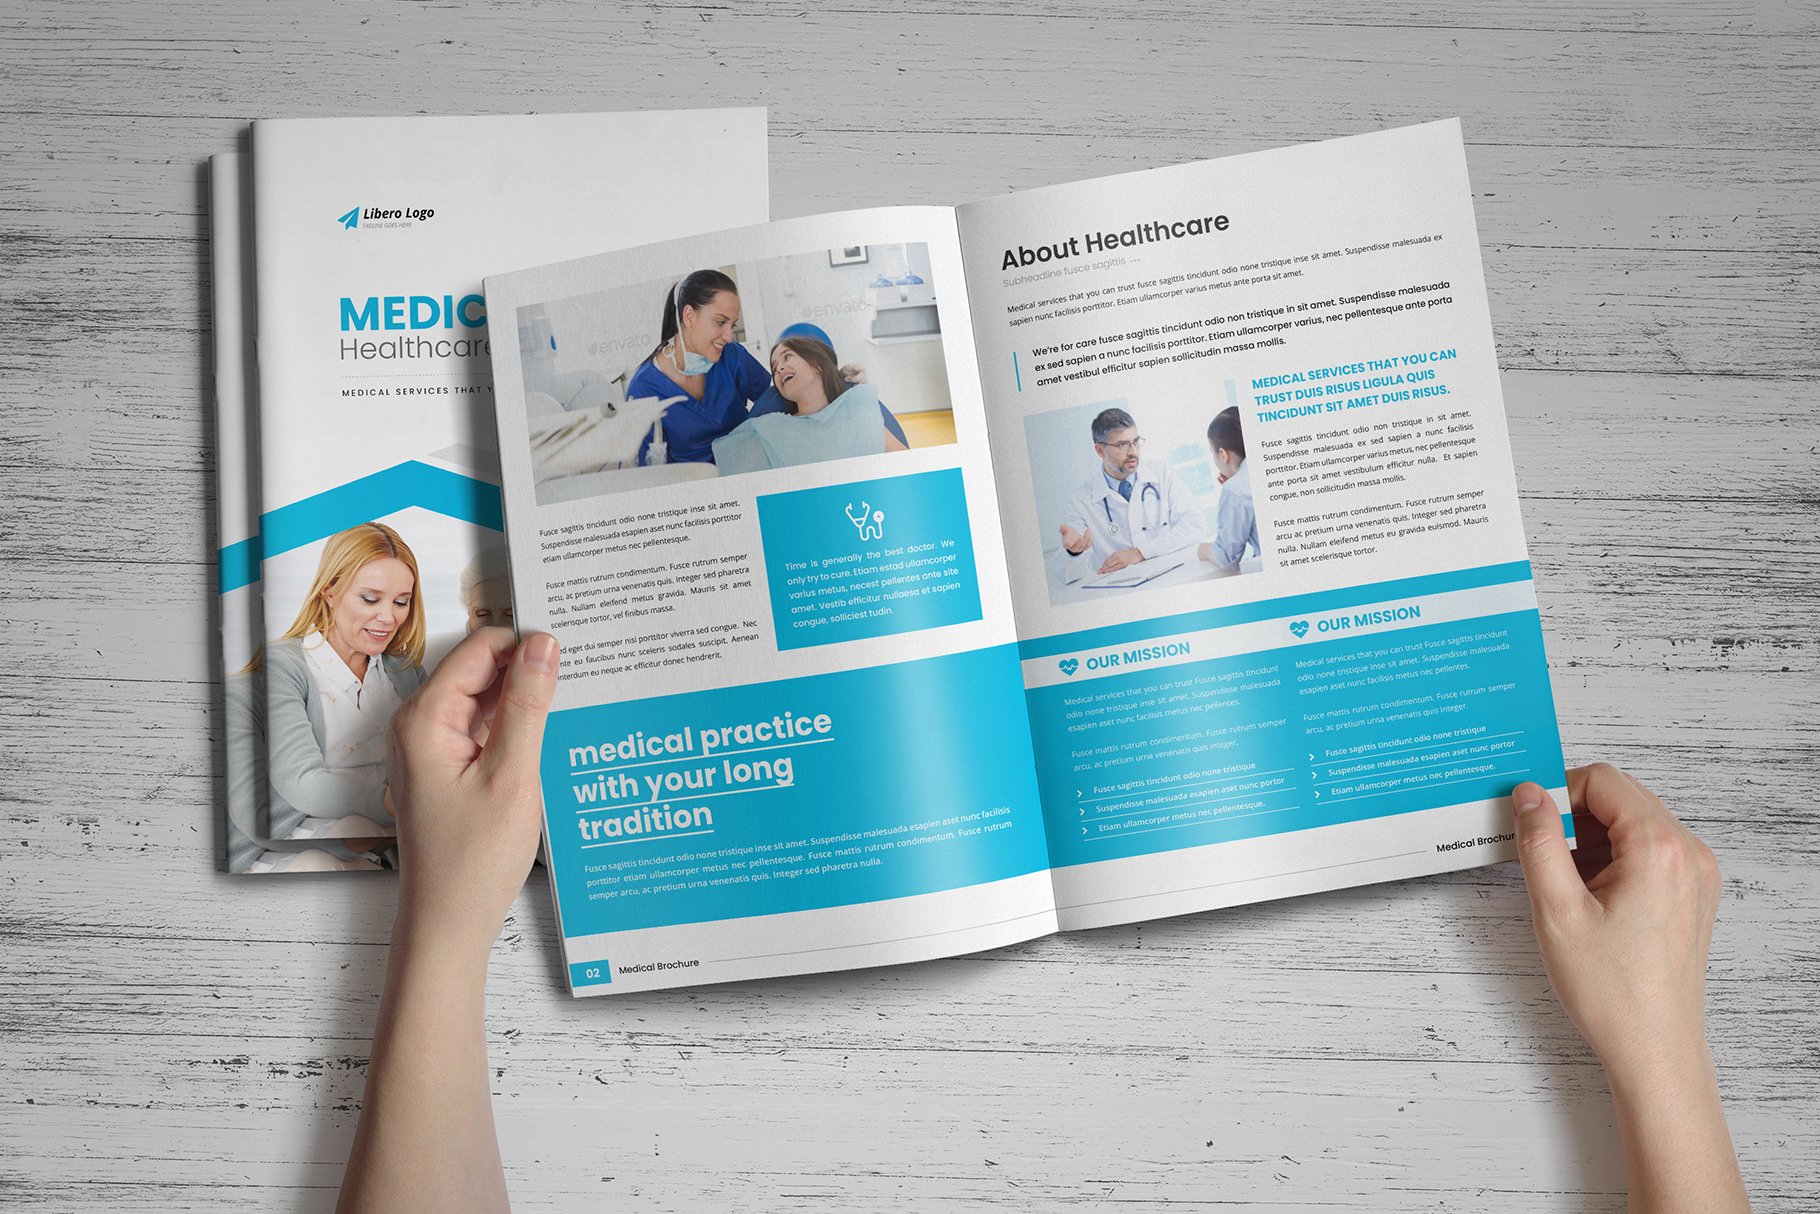 Medical HealthCare Brochure v6 preview image.